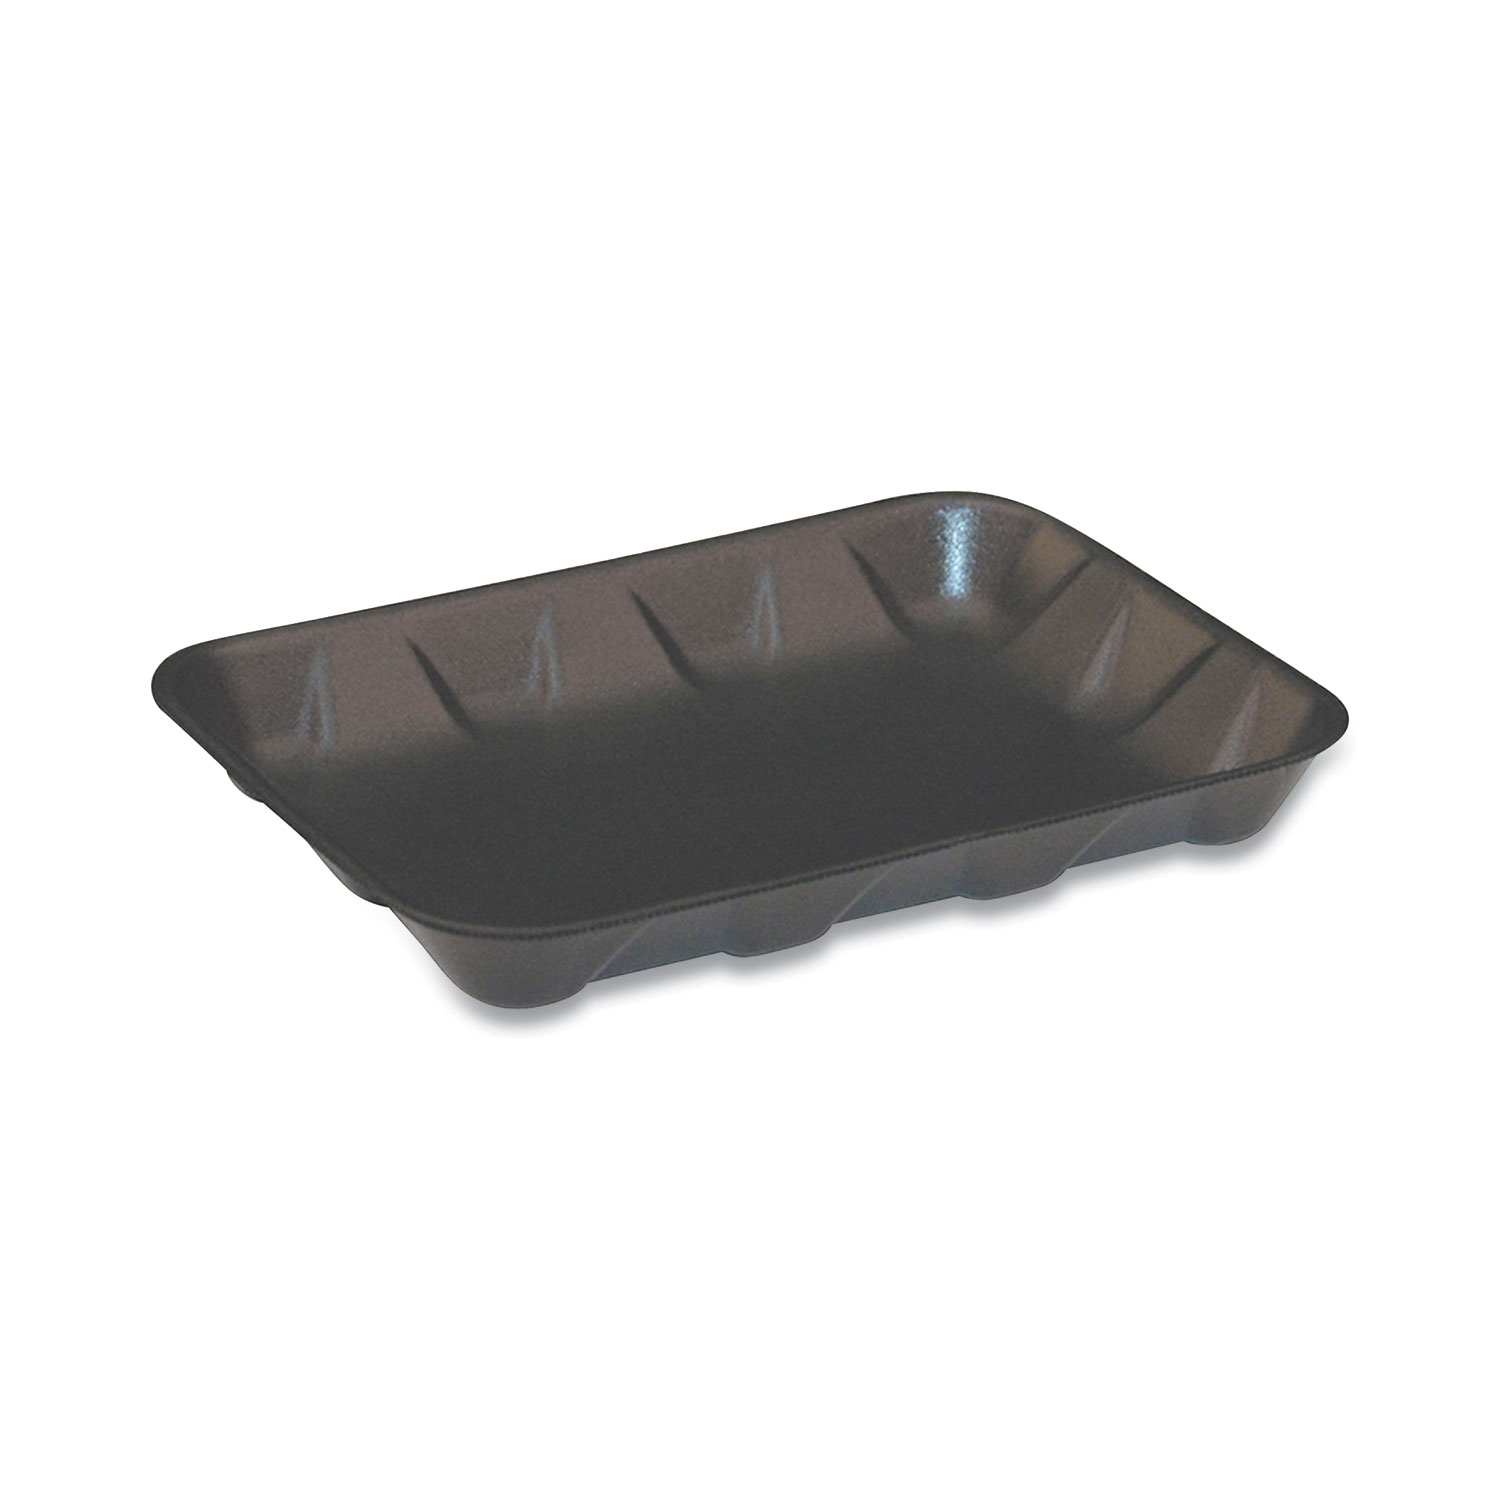  Pactiv 51P904D Supermarket Trays, #4D, 9.58 x 7.08 x 1.25,  Black, 400/Carton (PCT51P904D) 